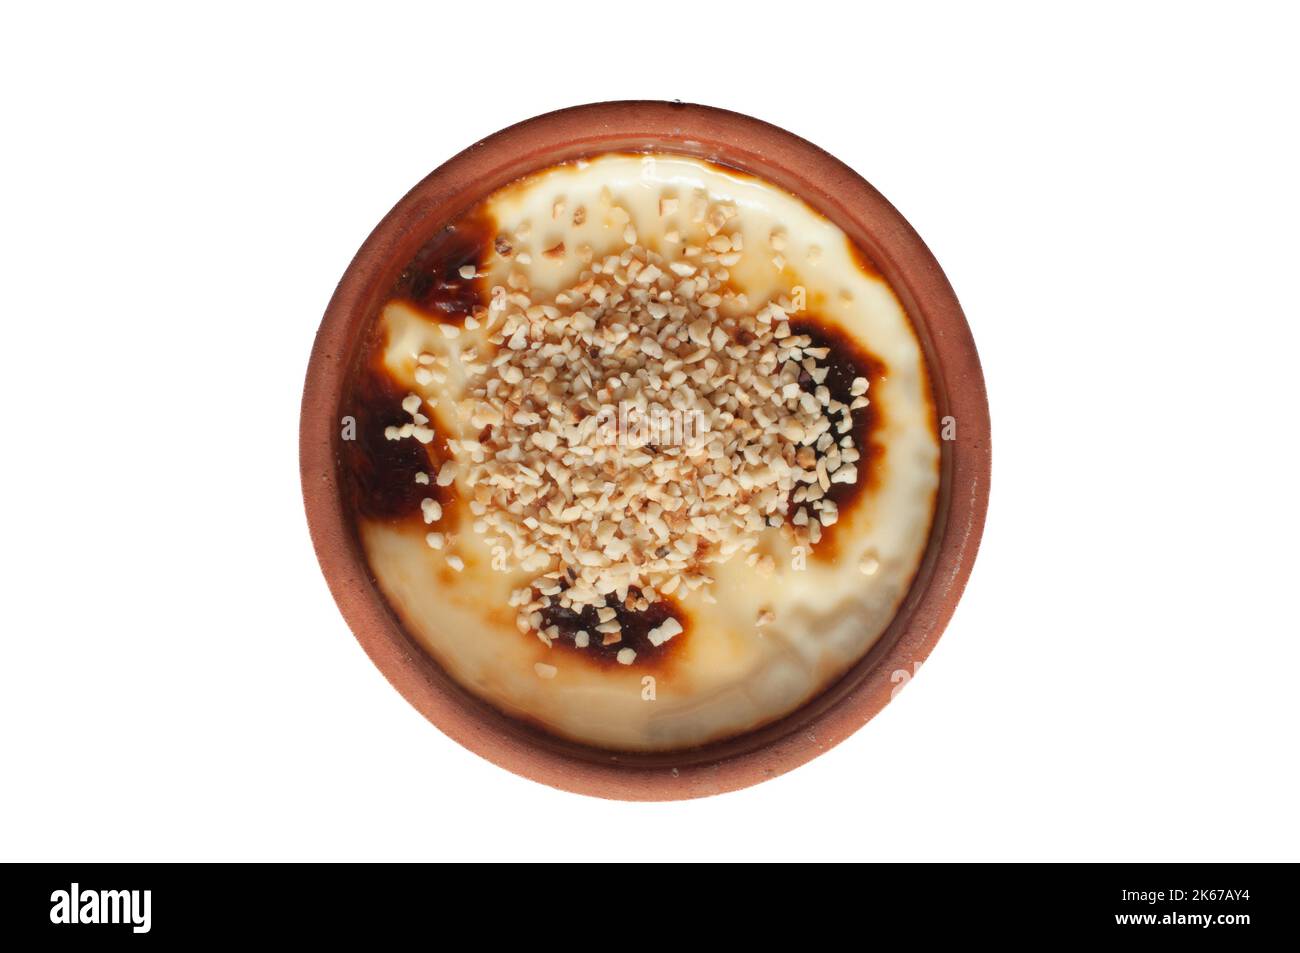 Reis-Pudding Mit Muskatnuss Stockbild - Bild von nachtisch, reis: 127278467